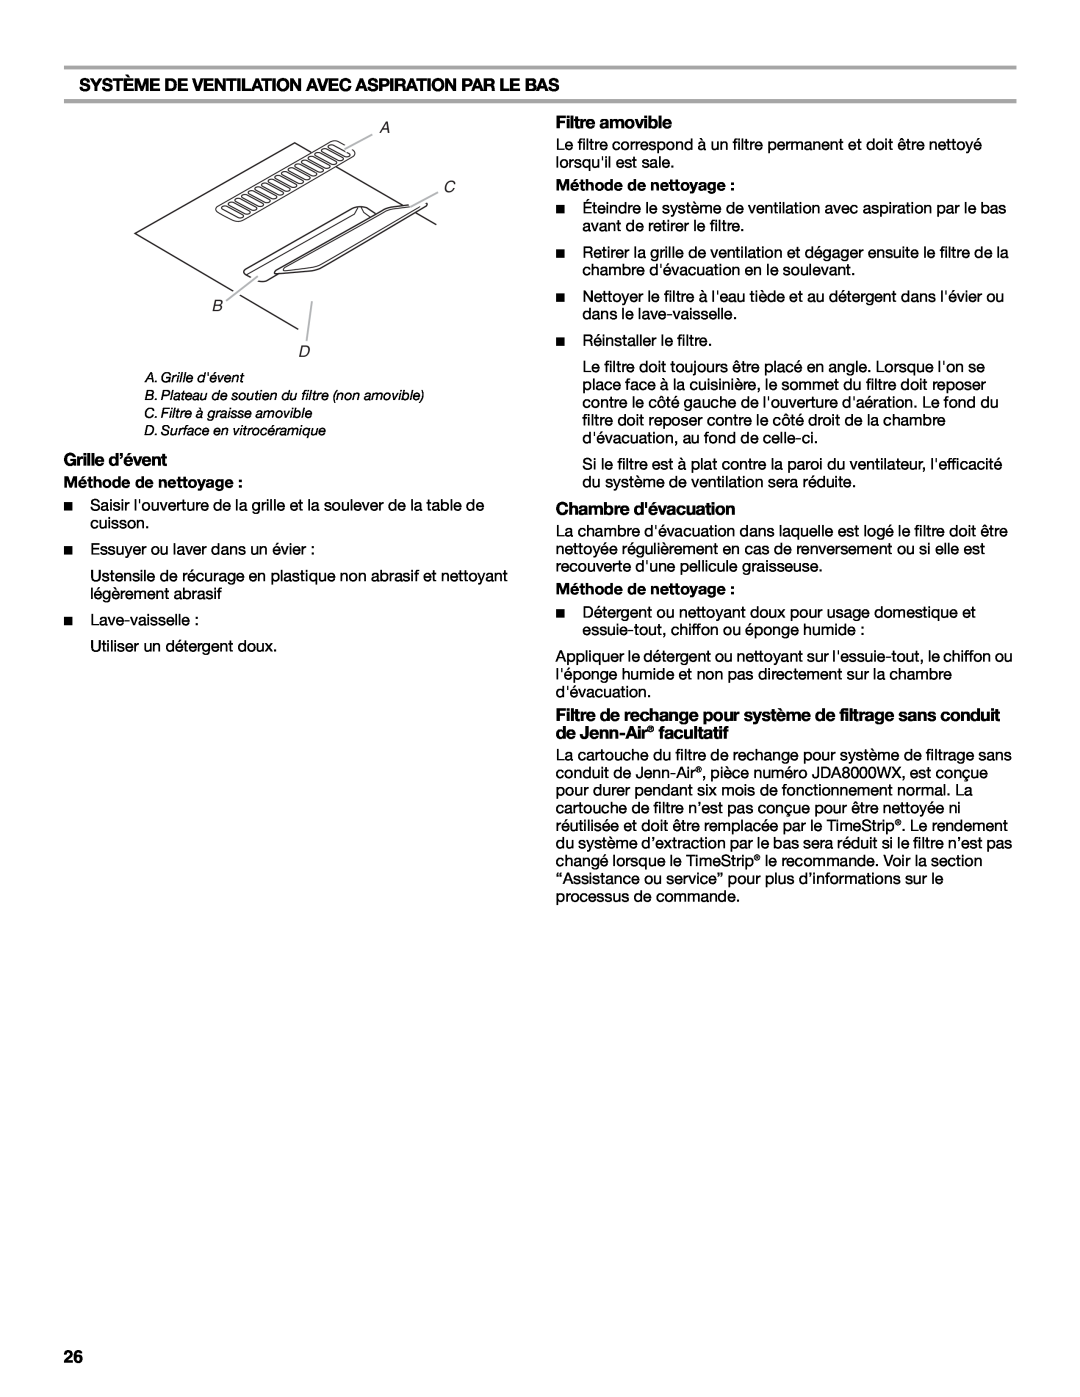 Jenn-Air W10197057B manual Système De Ventilation Avec Aspiration Par Le Bas, Grille d’évent, Filtre amovible, A C B D 